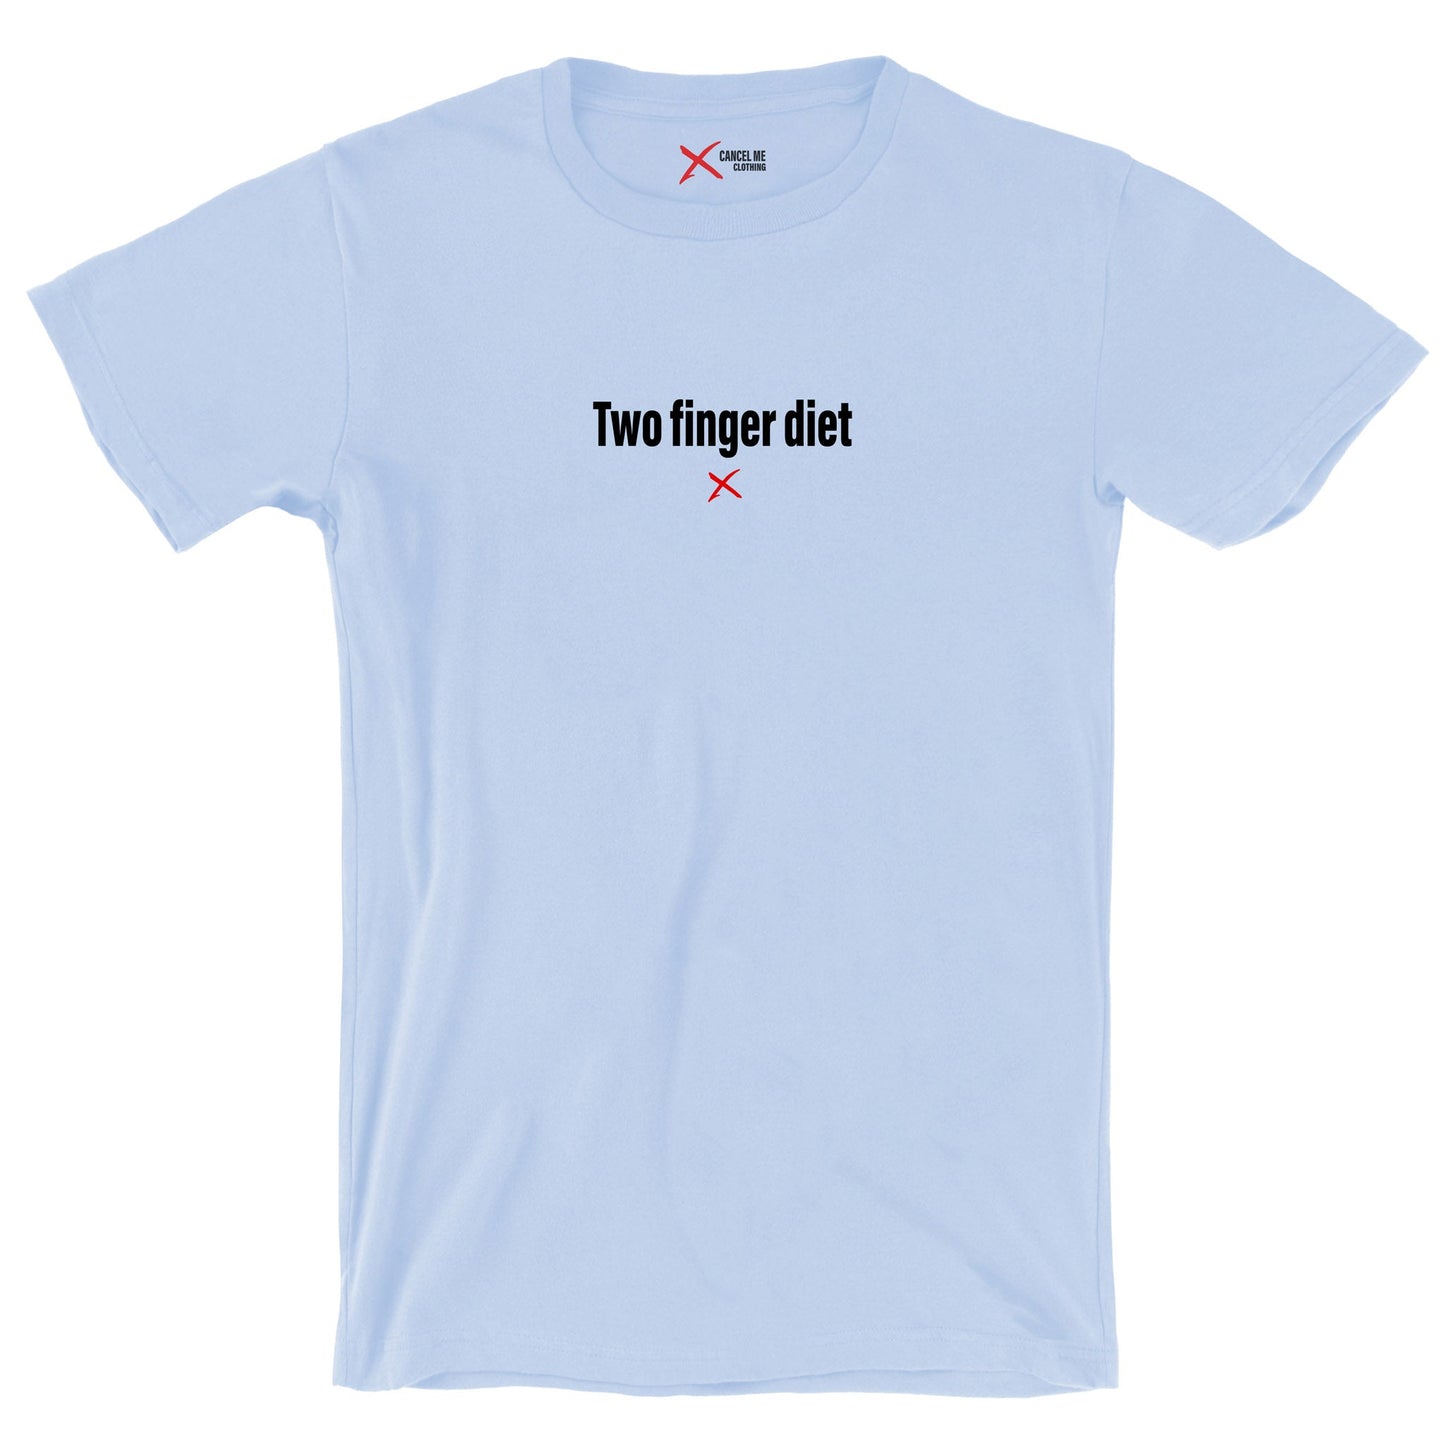 Two finger diet - Shirt